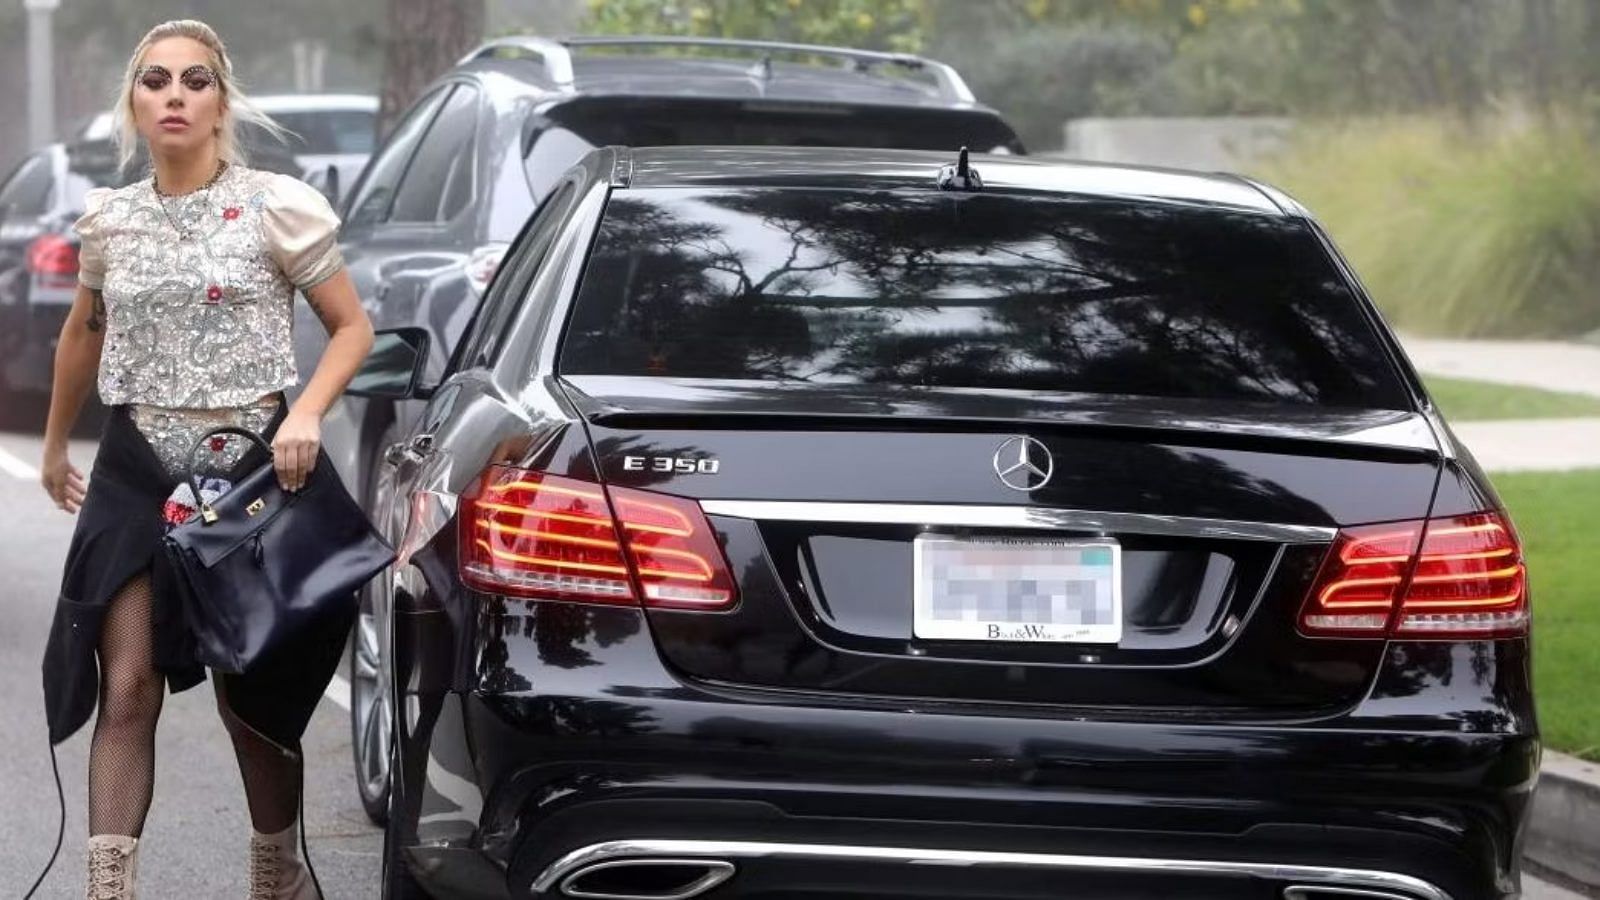 Lady Gaga's Mercedes-Benz E350